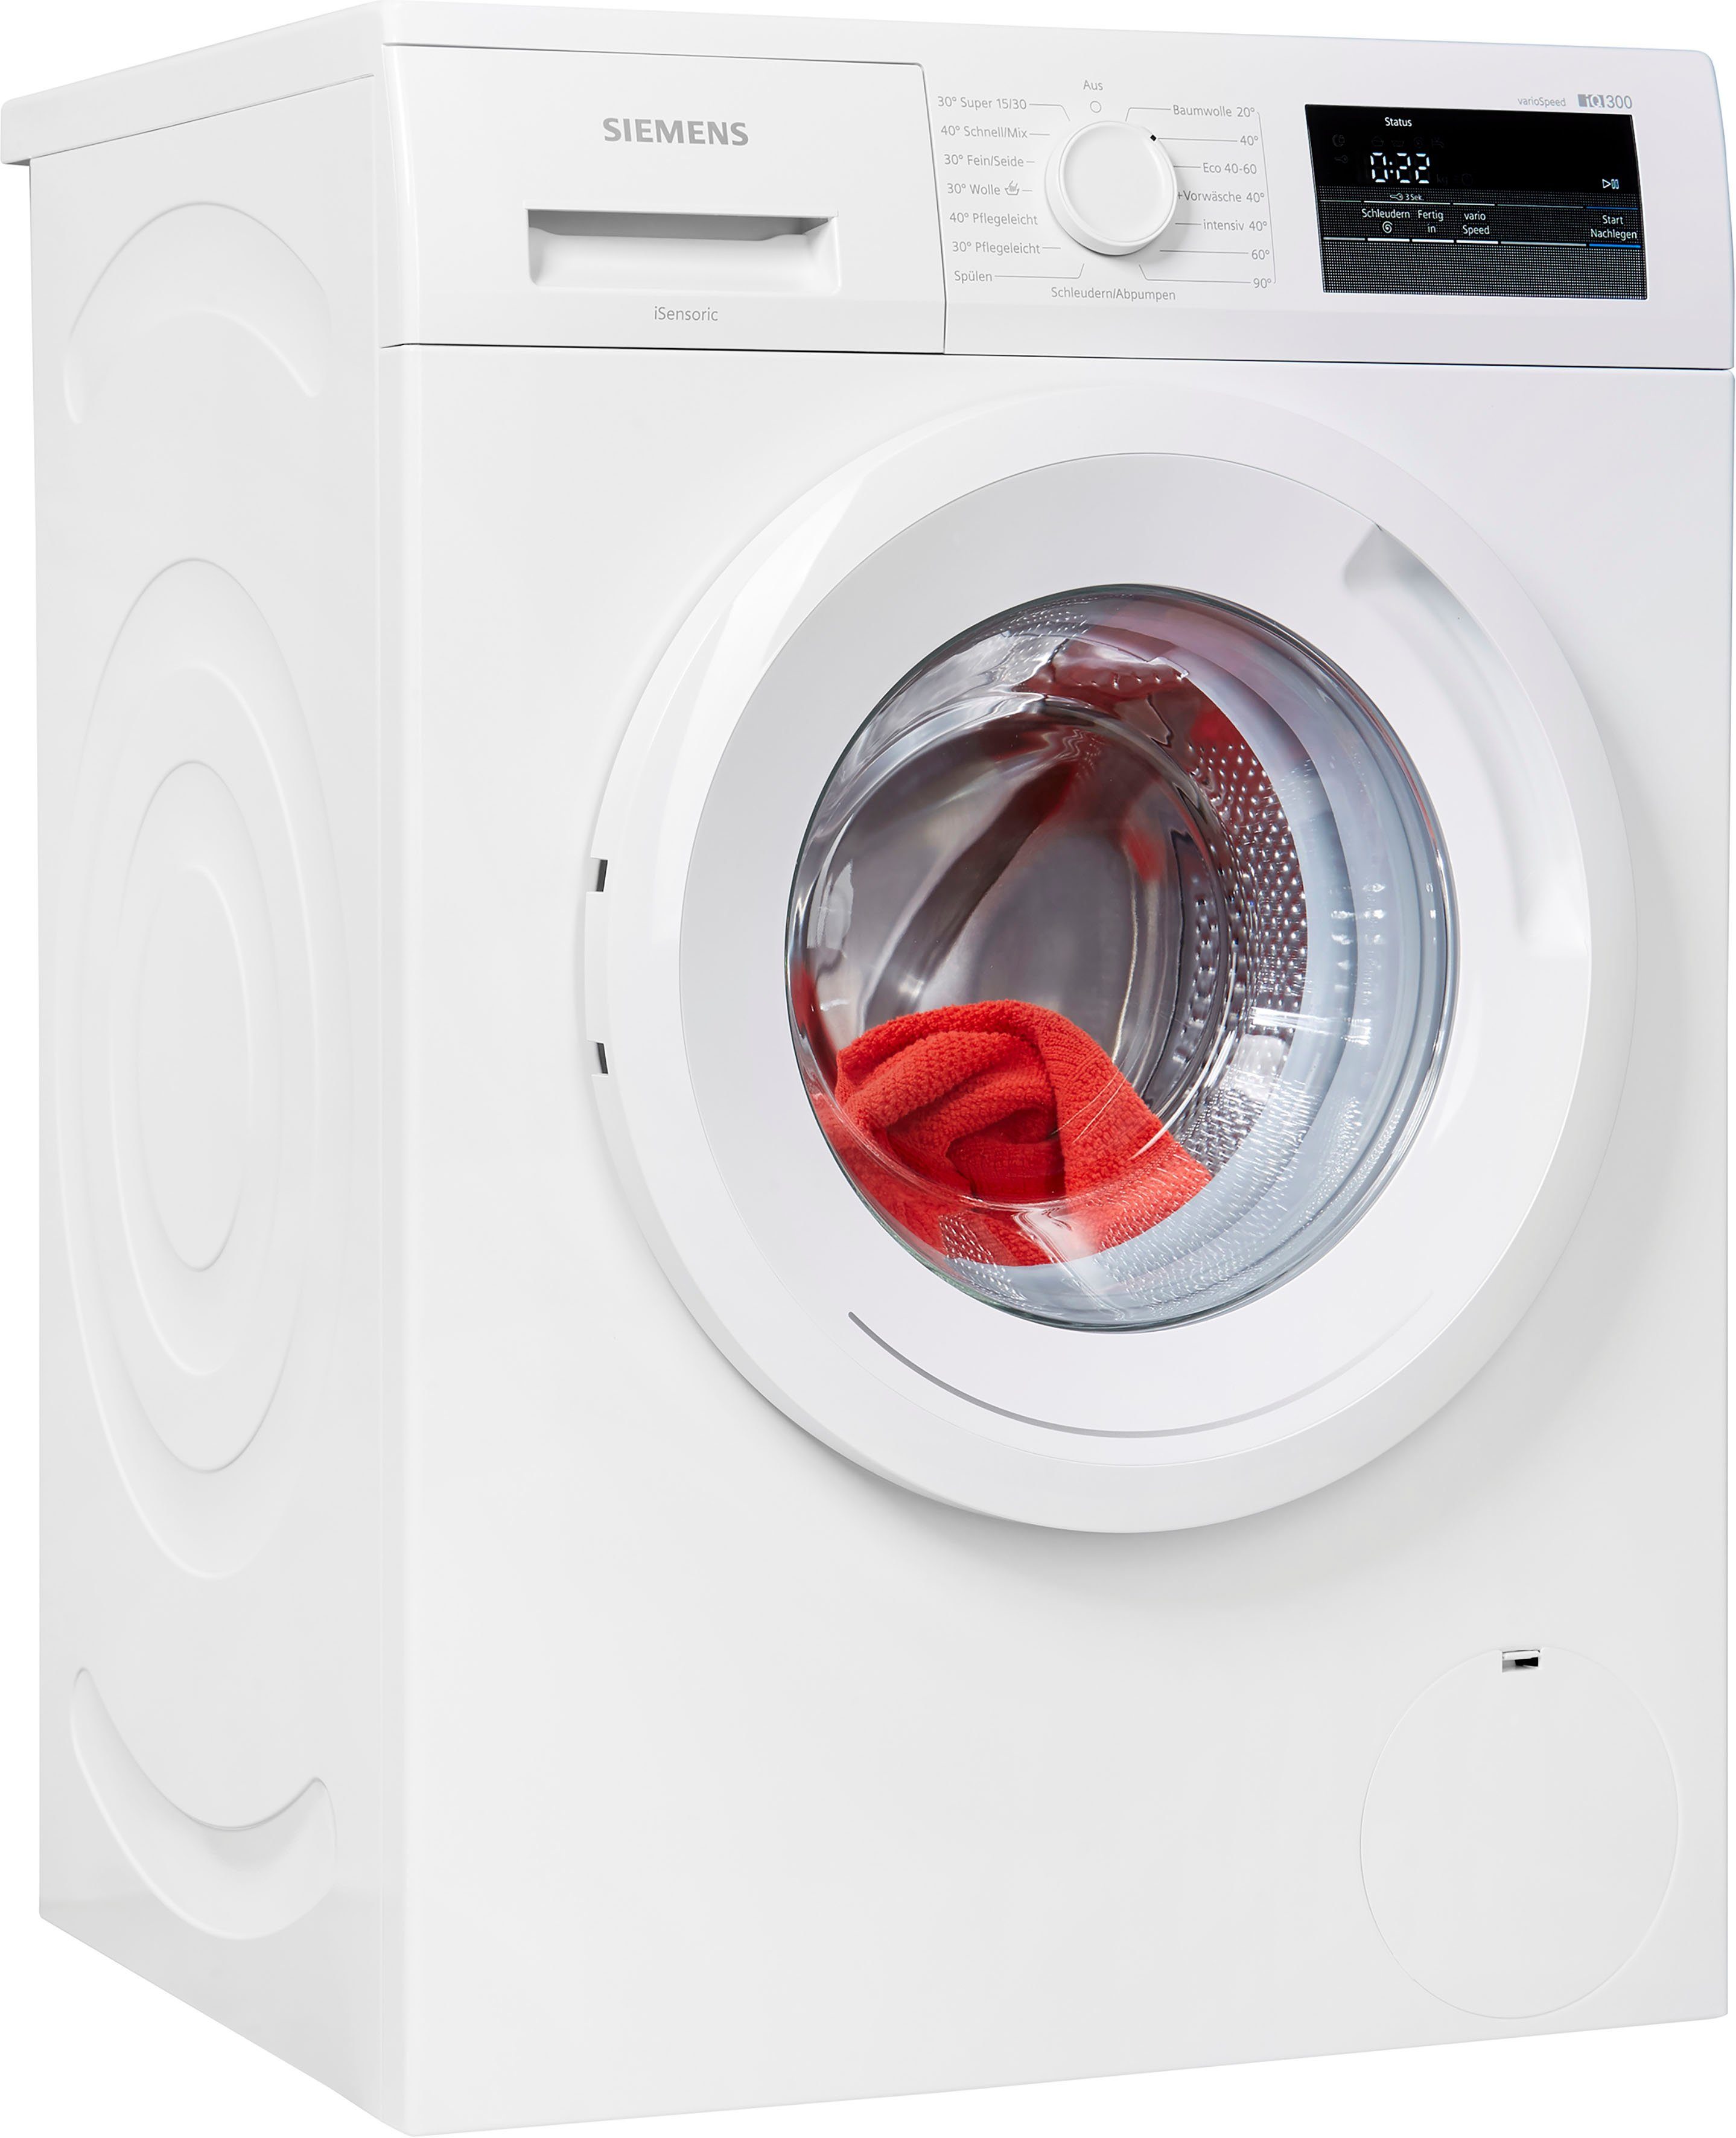 SIEMENS Waschmaschine iQ300 WM14N0A2, 7 kg, 1400 U/min online kaufen | OTTO